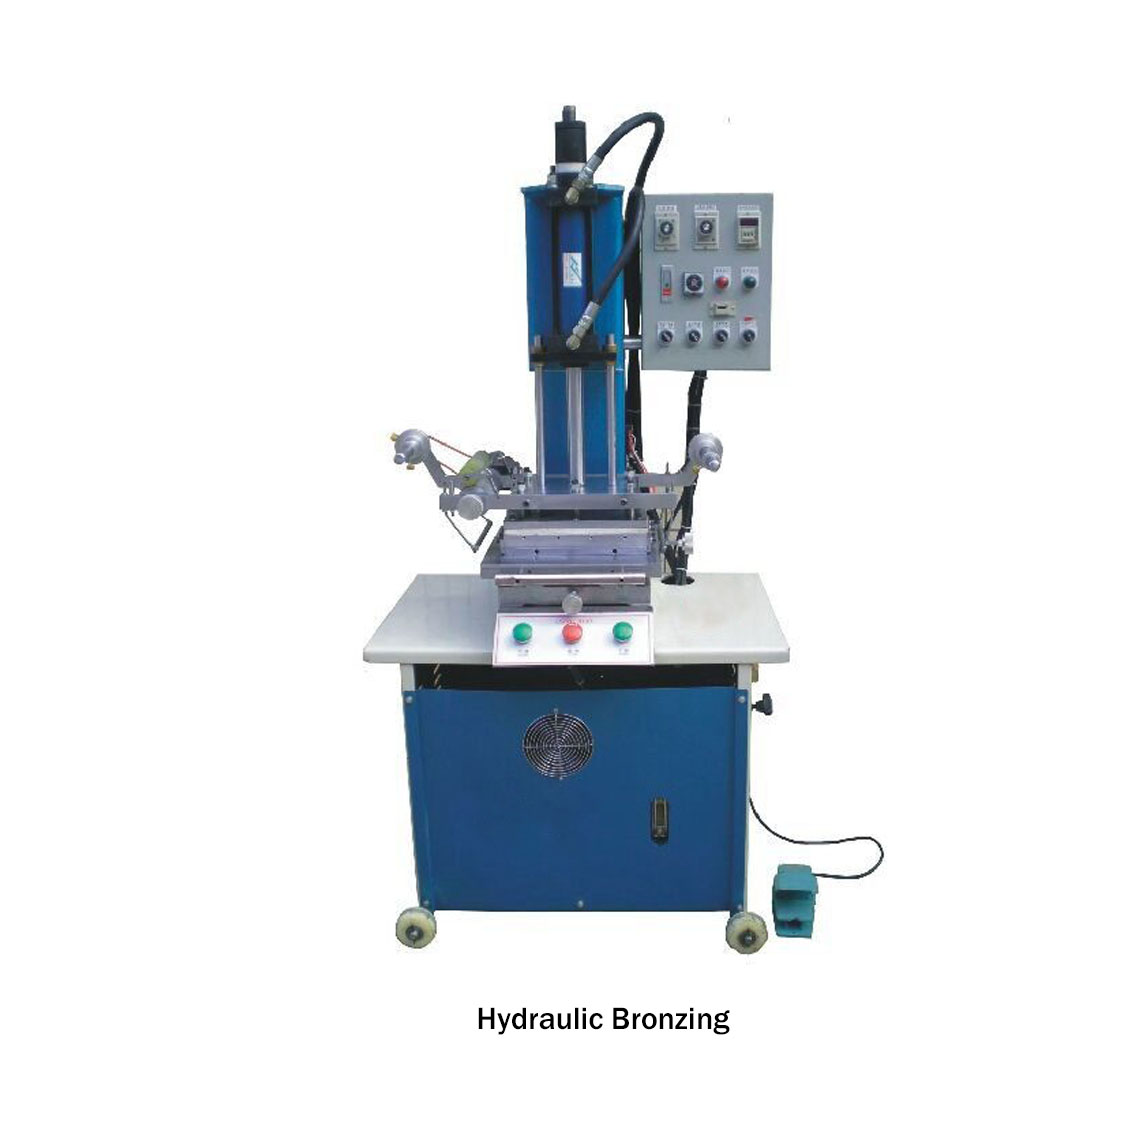 Hydraulic Bronzing